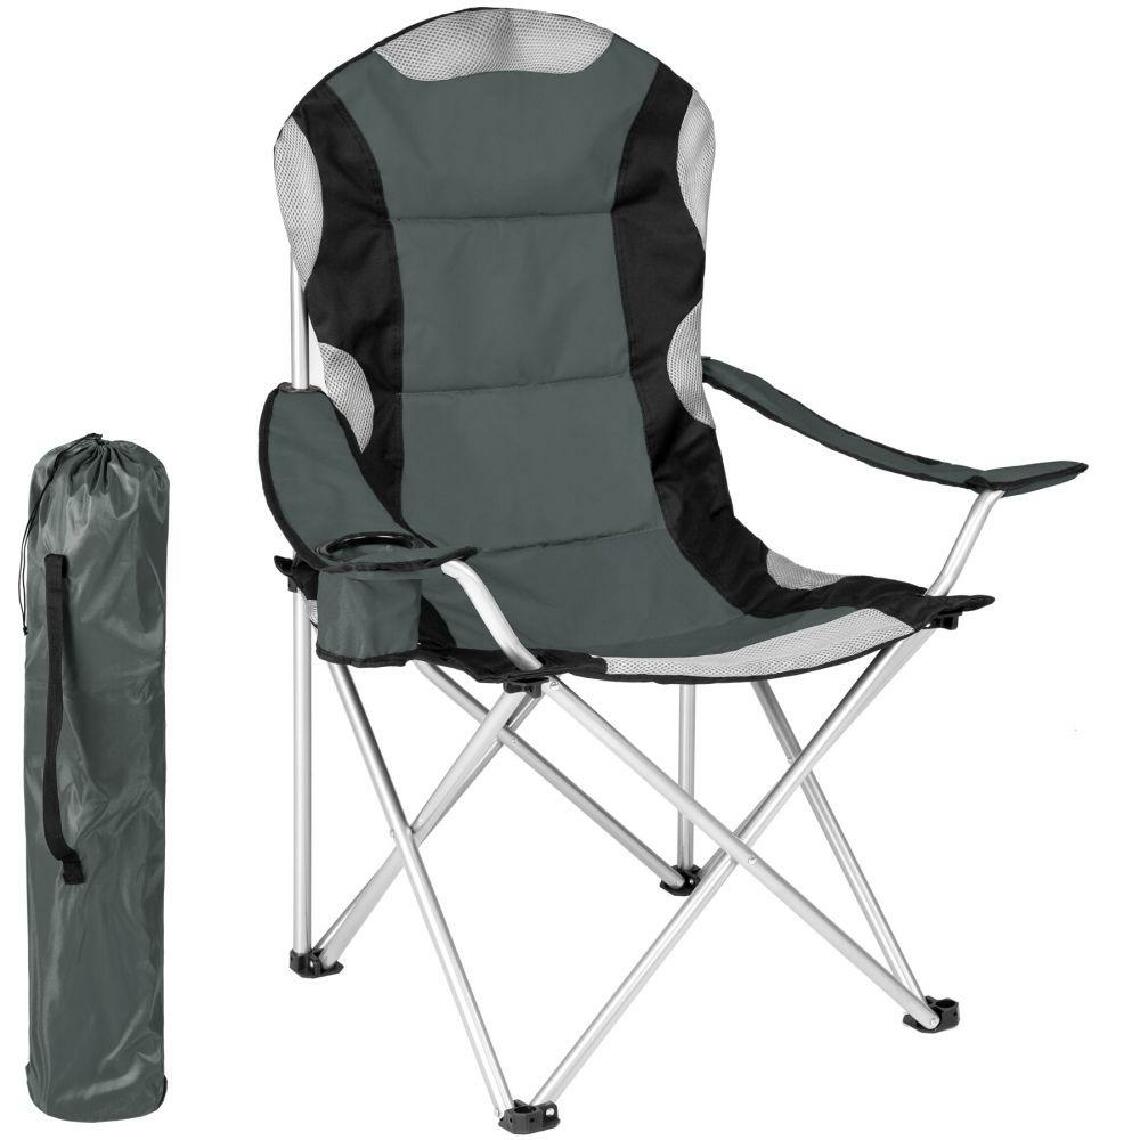 Helloshop26 - Chaise pliante avec rembourrage camping gris 2208090_2 - Chaises de jardin